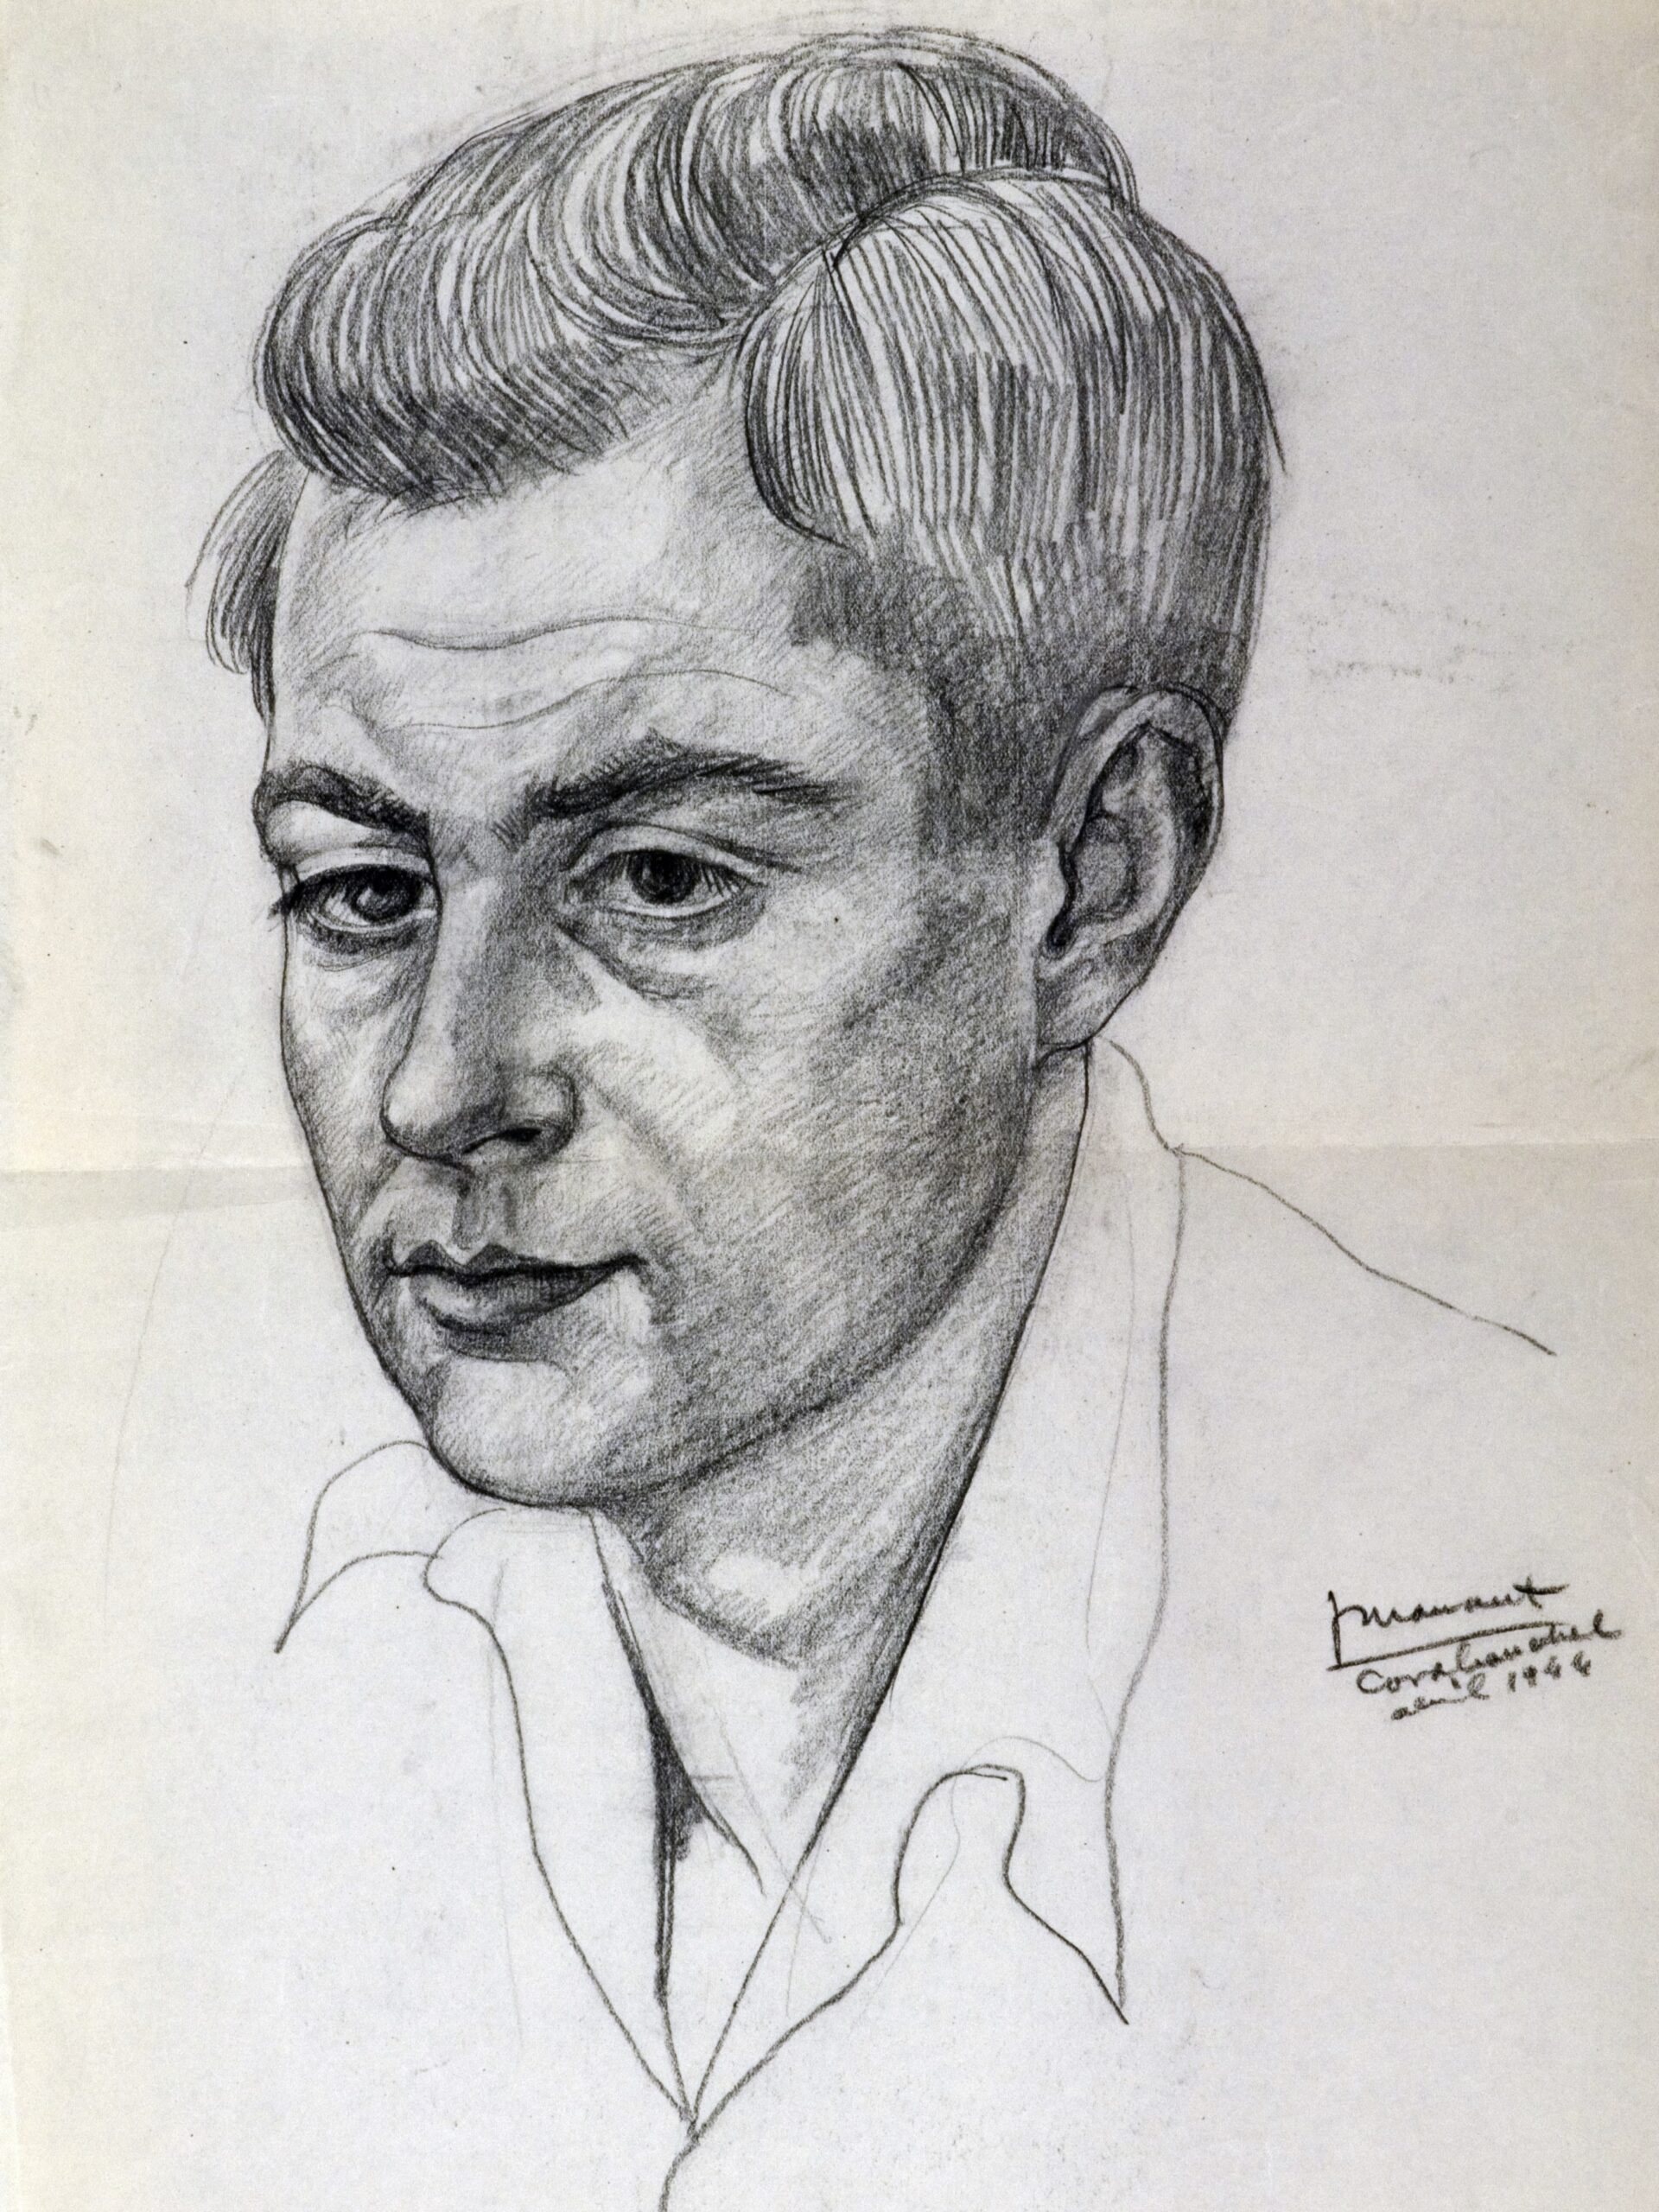 Dibujo de José Manaut titulado Ángel Hernández Sánchez (escrito en reverso), retrato de joven, Carabanchel, 1944. Carboncillo sobre papel.